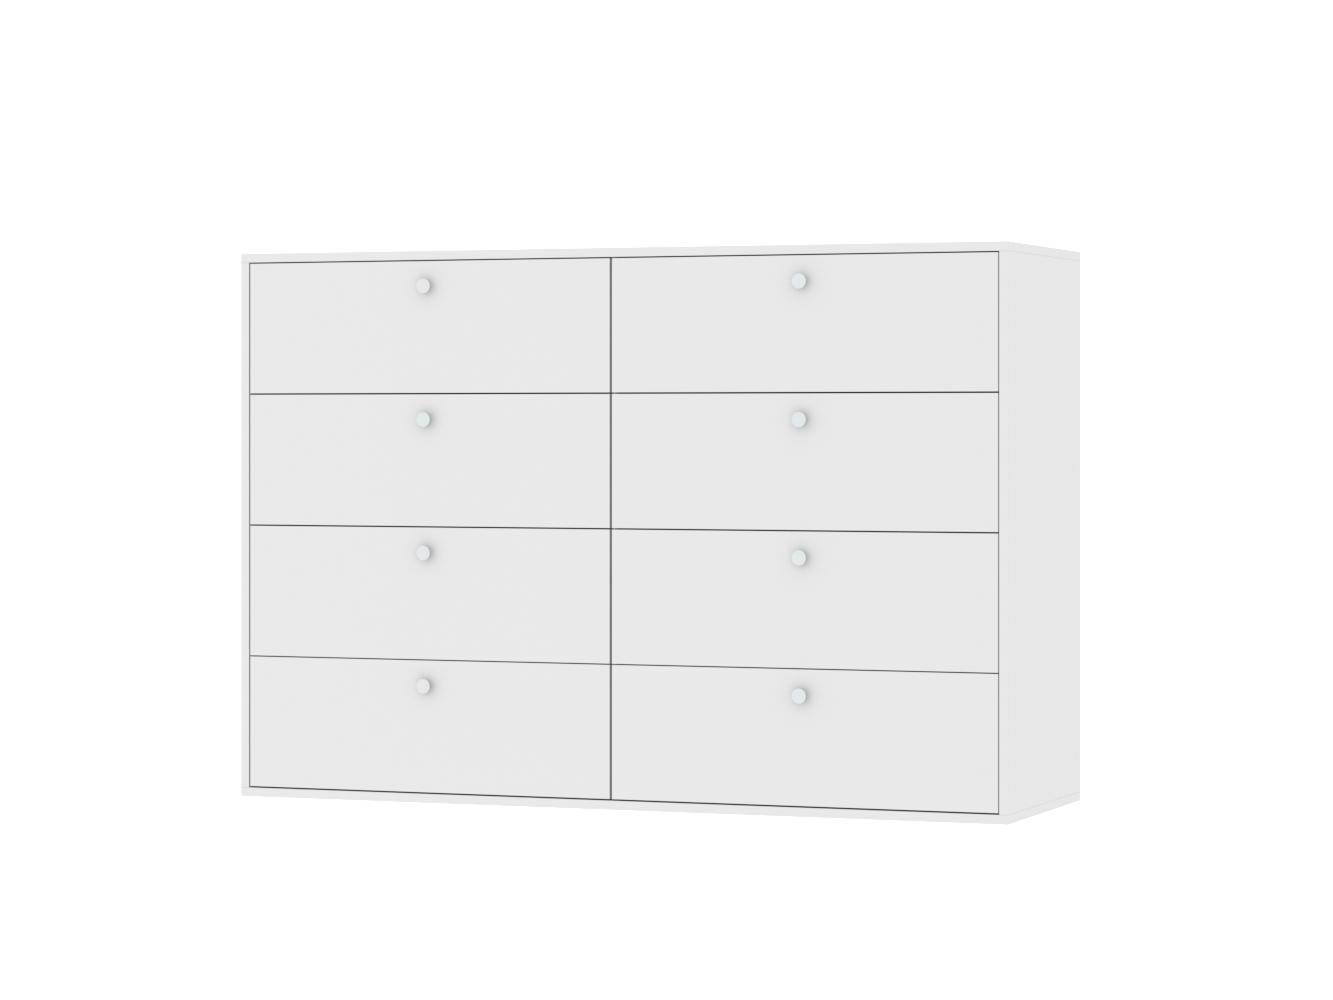 Комод Каллакс 17 white ИКЕА (IKEA) изображение товара